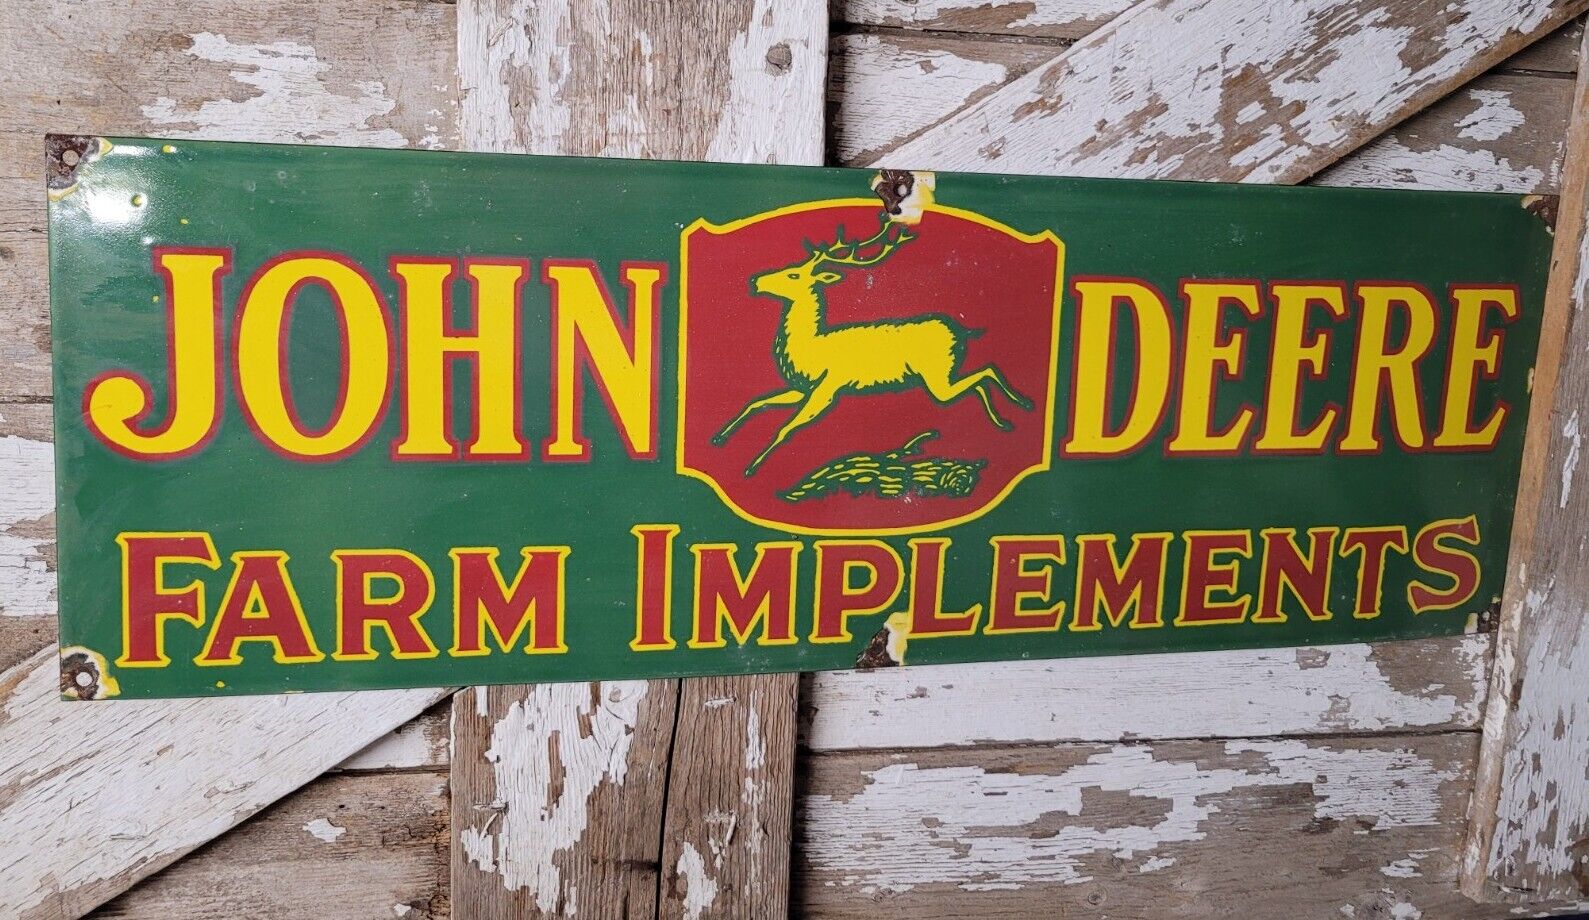 VINTAGE JOHN DEERE PORCELAIN SIGN RARE GREEN TRACTOR FARM IMPLEMENTS DEALER 3FT